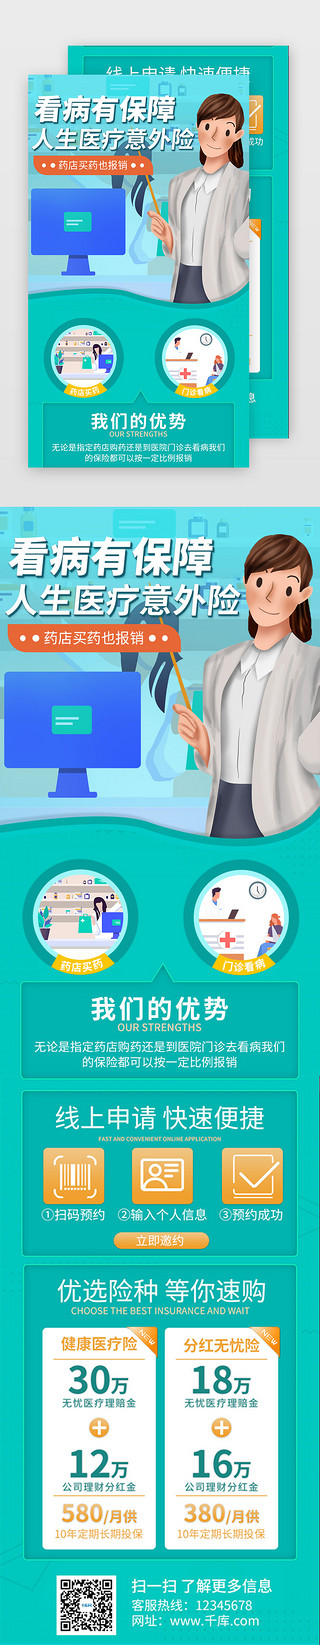 医疗健康海报UI设计素材_绿色保险医疗健康促销活动介绍H5